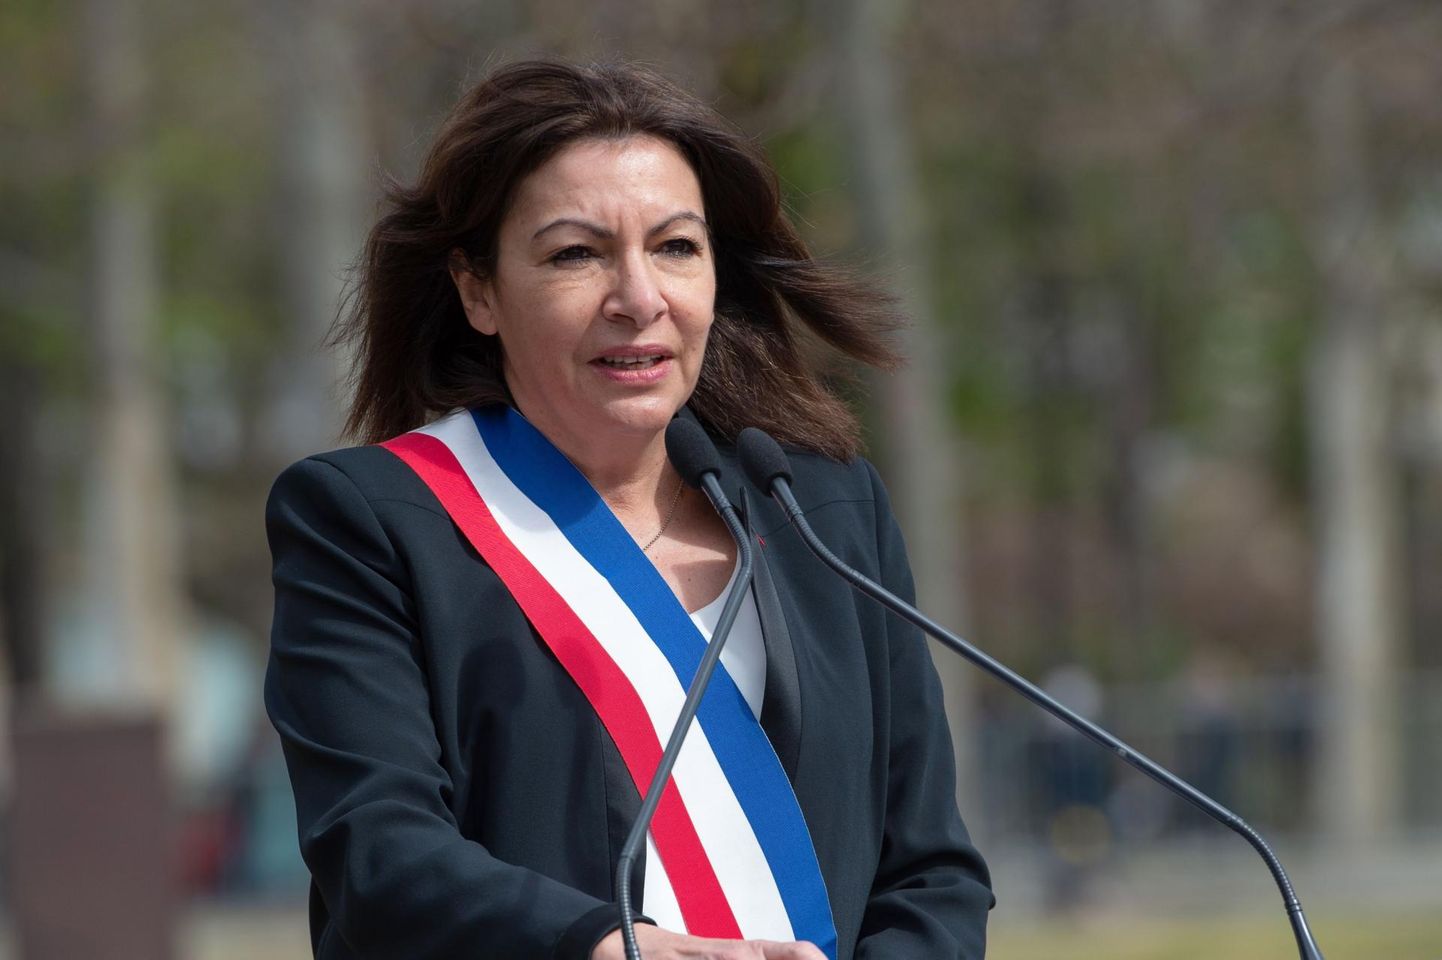 Pariis linnapea Anne Hidalgo on viimastel aastatel olnud madalseisus sotsialistide selgelt silmapaistvaima poliitik. 